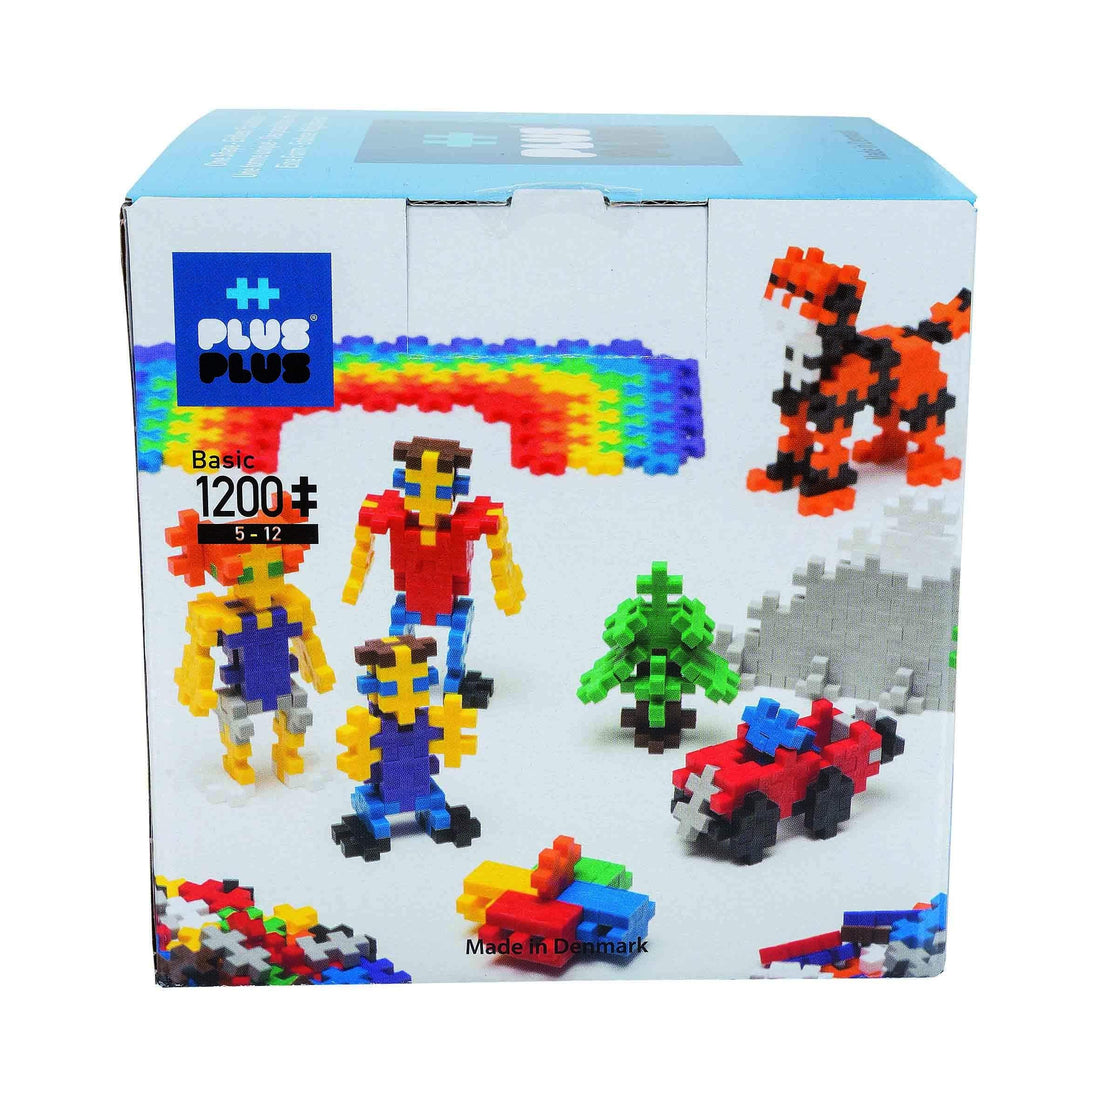 PLUS PLUS - Open Play Set - 1200 Piece - Basic Color Mix, Construction  Building Stem Toy, Interlocking Mini Puzzle Blocks for Kids